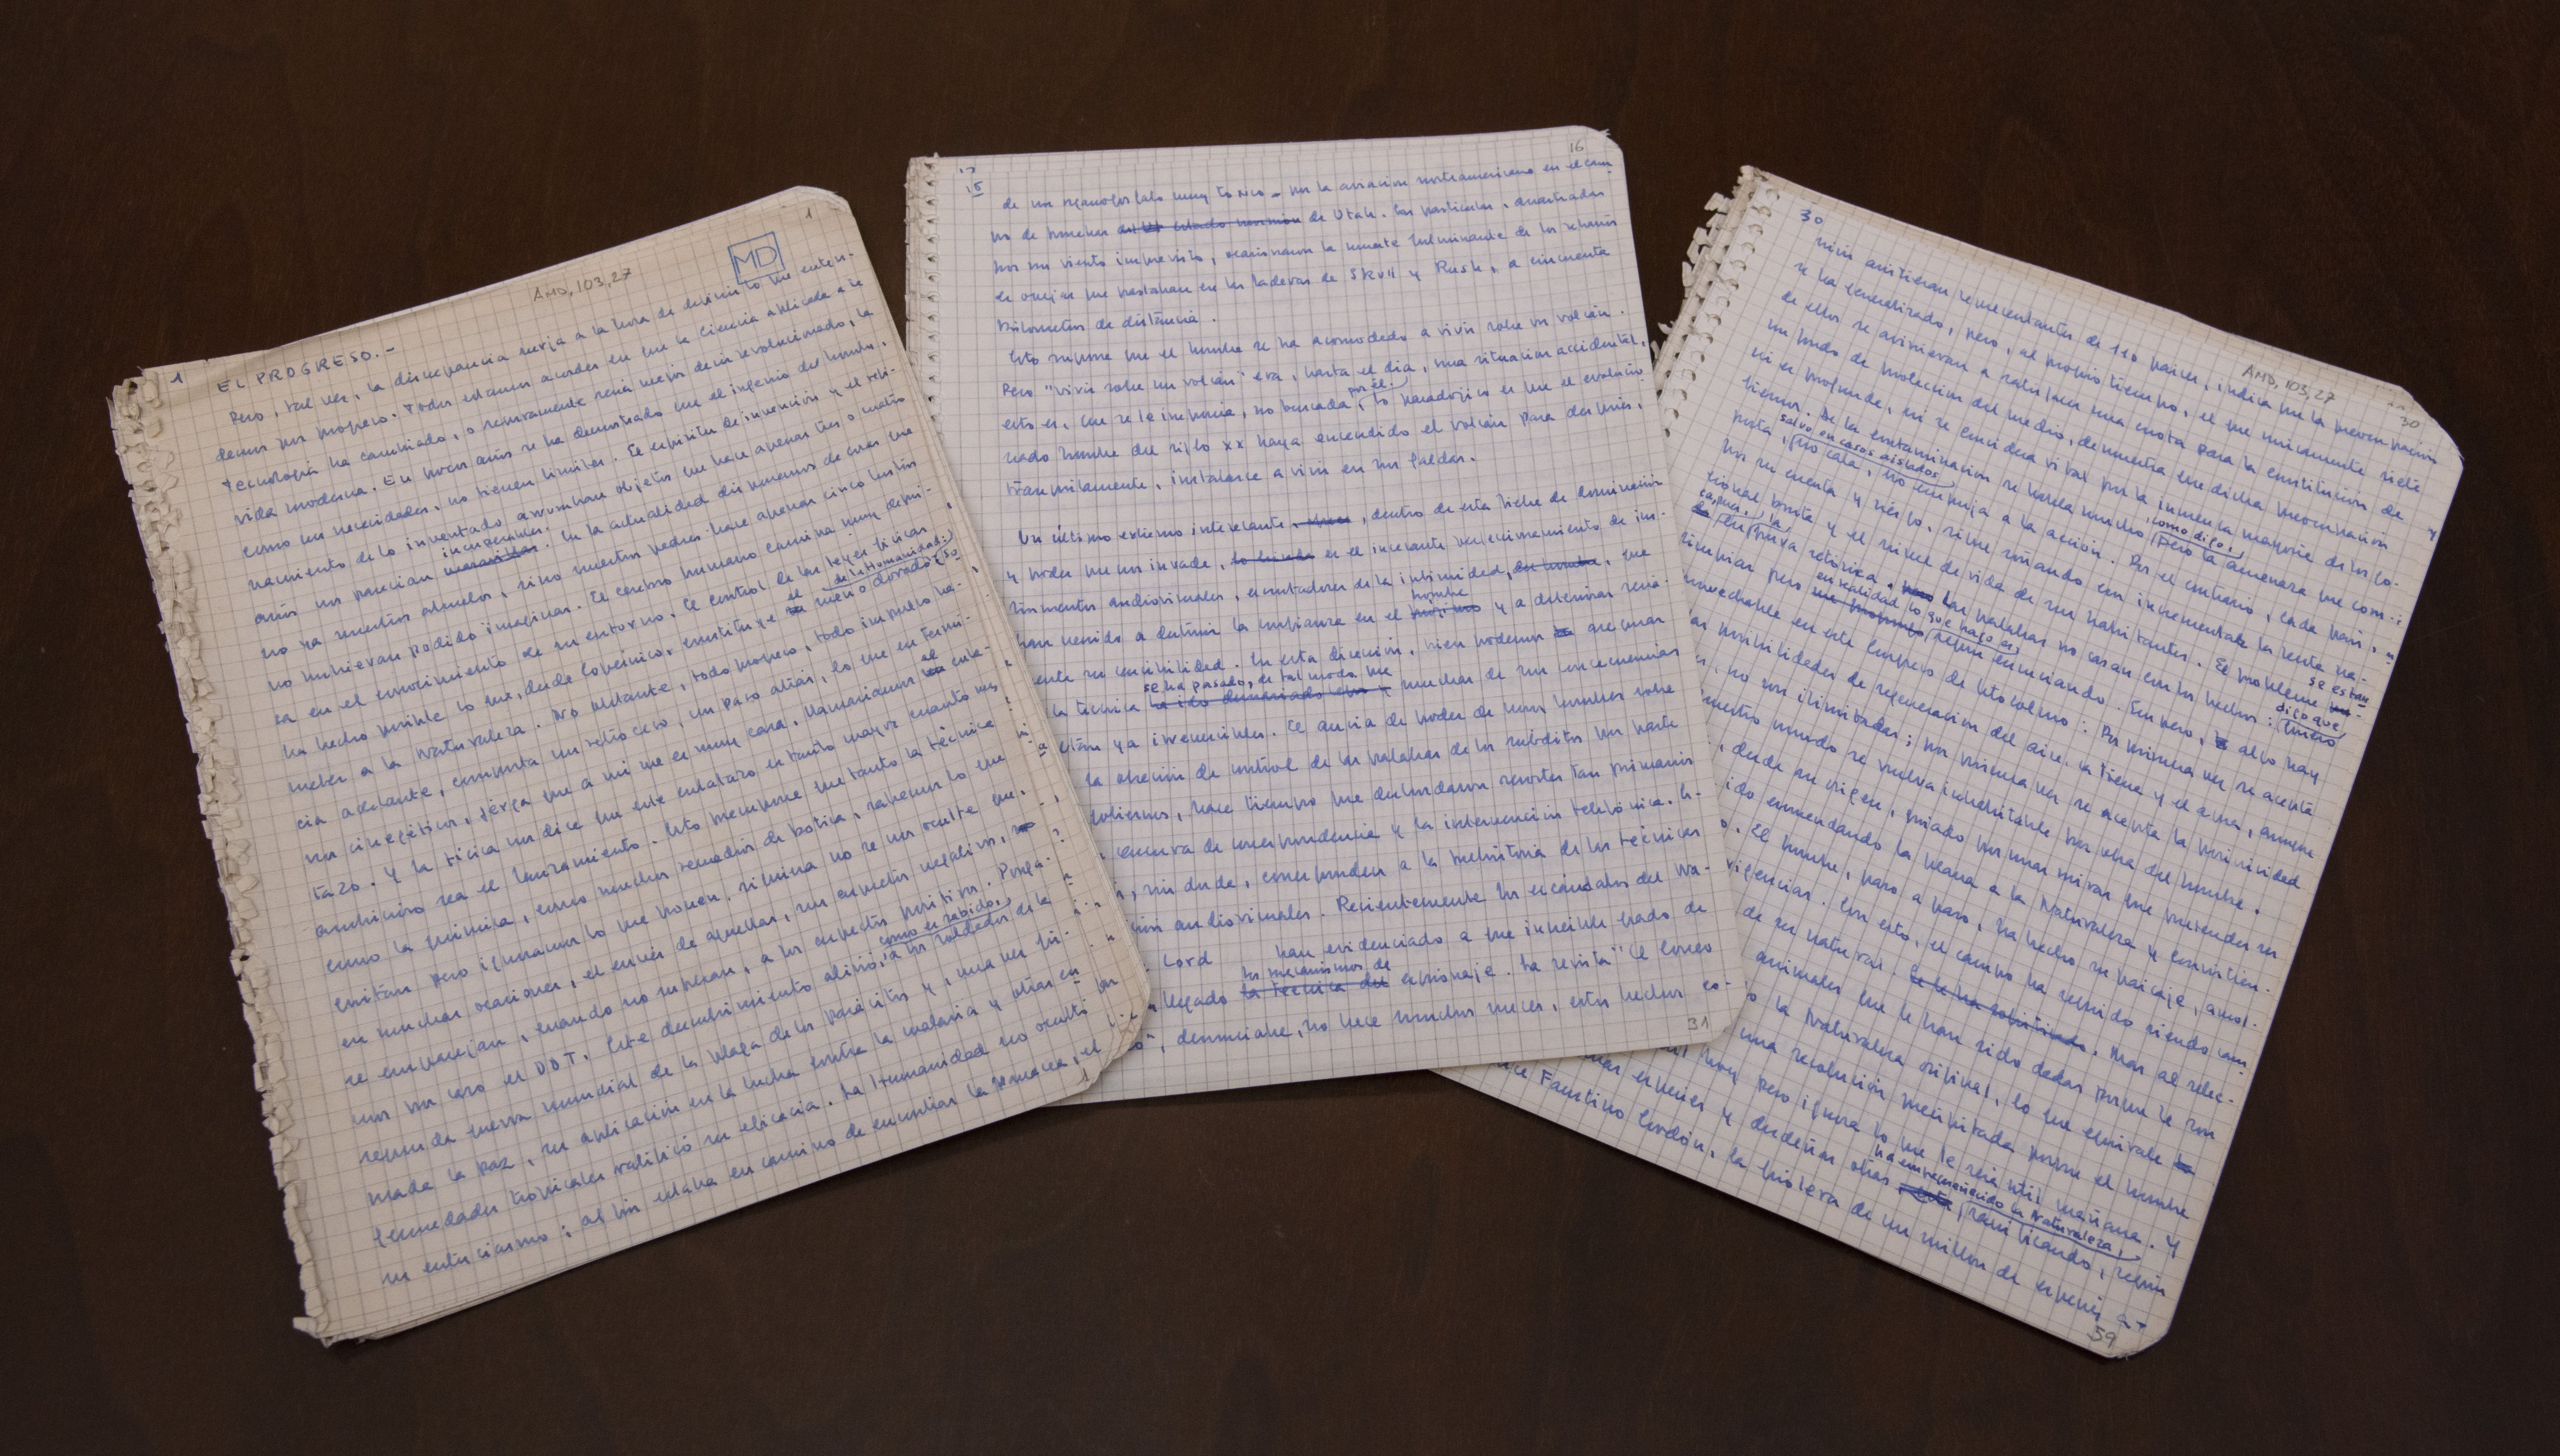 La familia de Delibes dona a la Biblioteca Nacional el manuscrito de su discurso de ingreso a la RAE